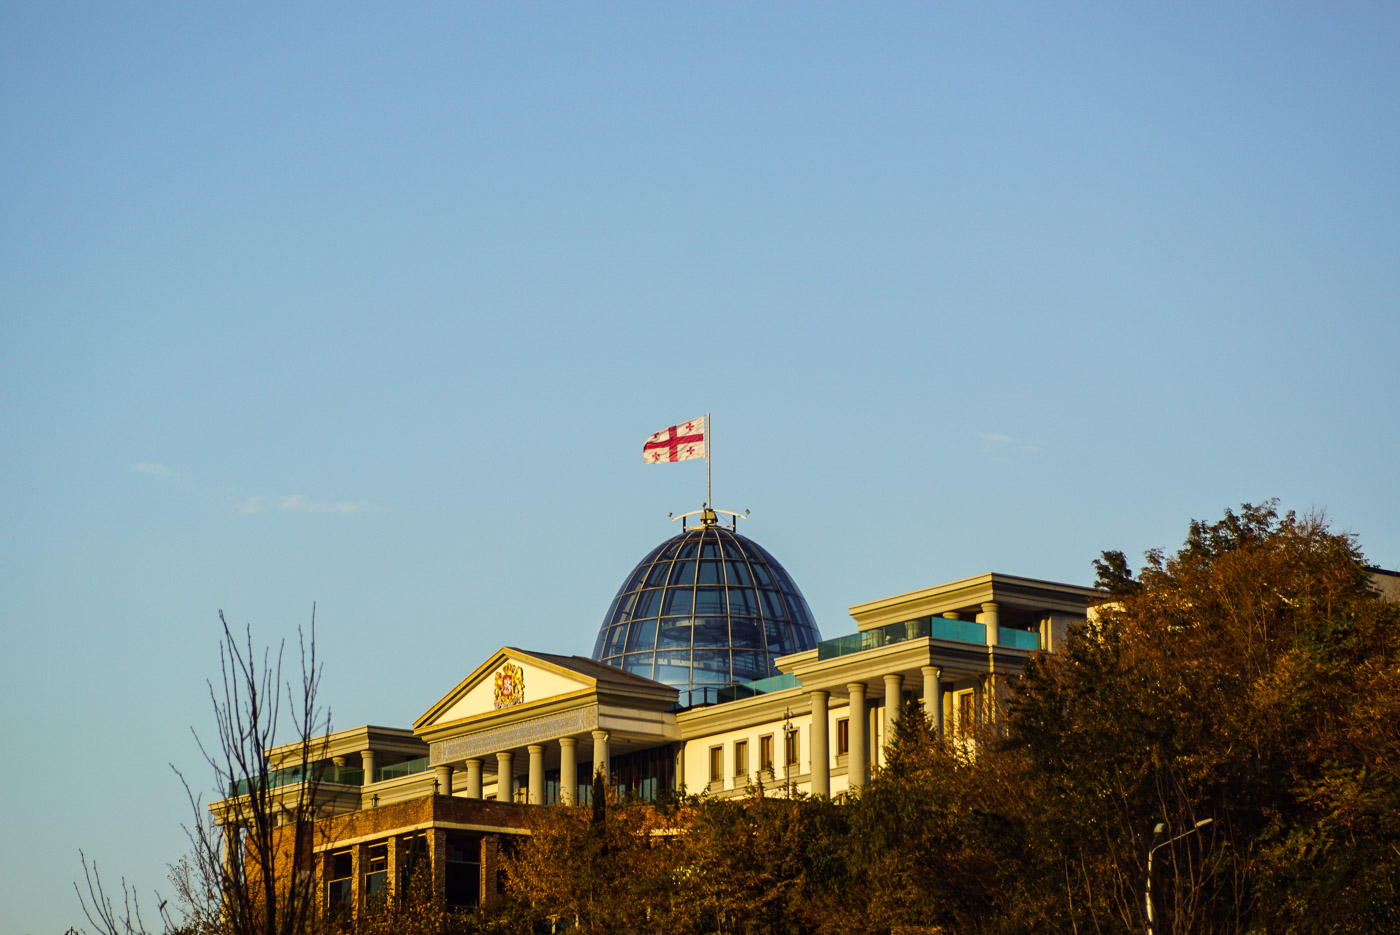 Zu sehen ist der Präsidentenpalast in Georgien Tbilisi. Auf seiner gläsernen Kuppel, ähnlich der des Reichstages, weht die georgische Flagge. Das ganze Gebäude ist in ein wunderschönes Licht durch die untergehende Sonne getaucht.